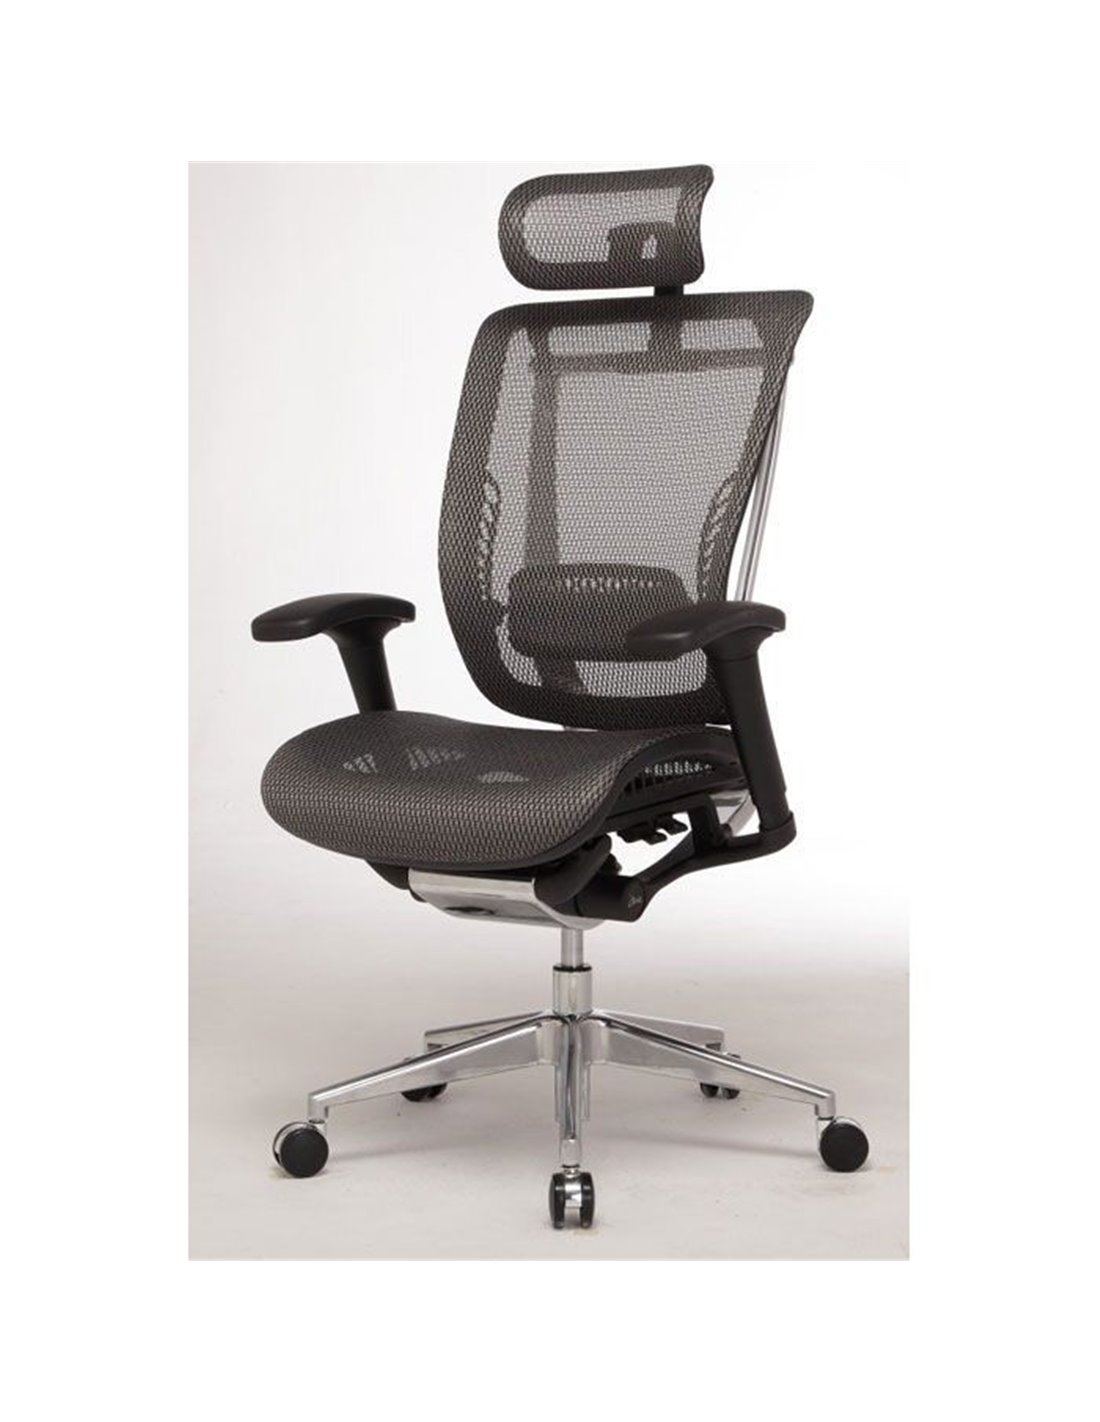 Офисное кресло сиденье сетка. Кресло Expert Spring черная сетка hspm01-BK. Кресло офисное спринг. Компьютерное кресло falto Expert Sail офисное. Кресло falto Spring.